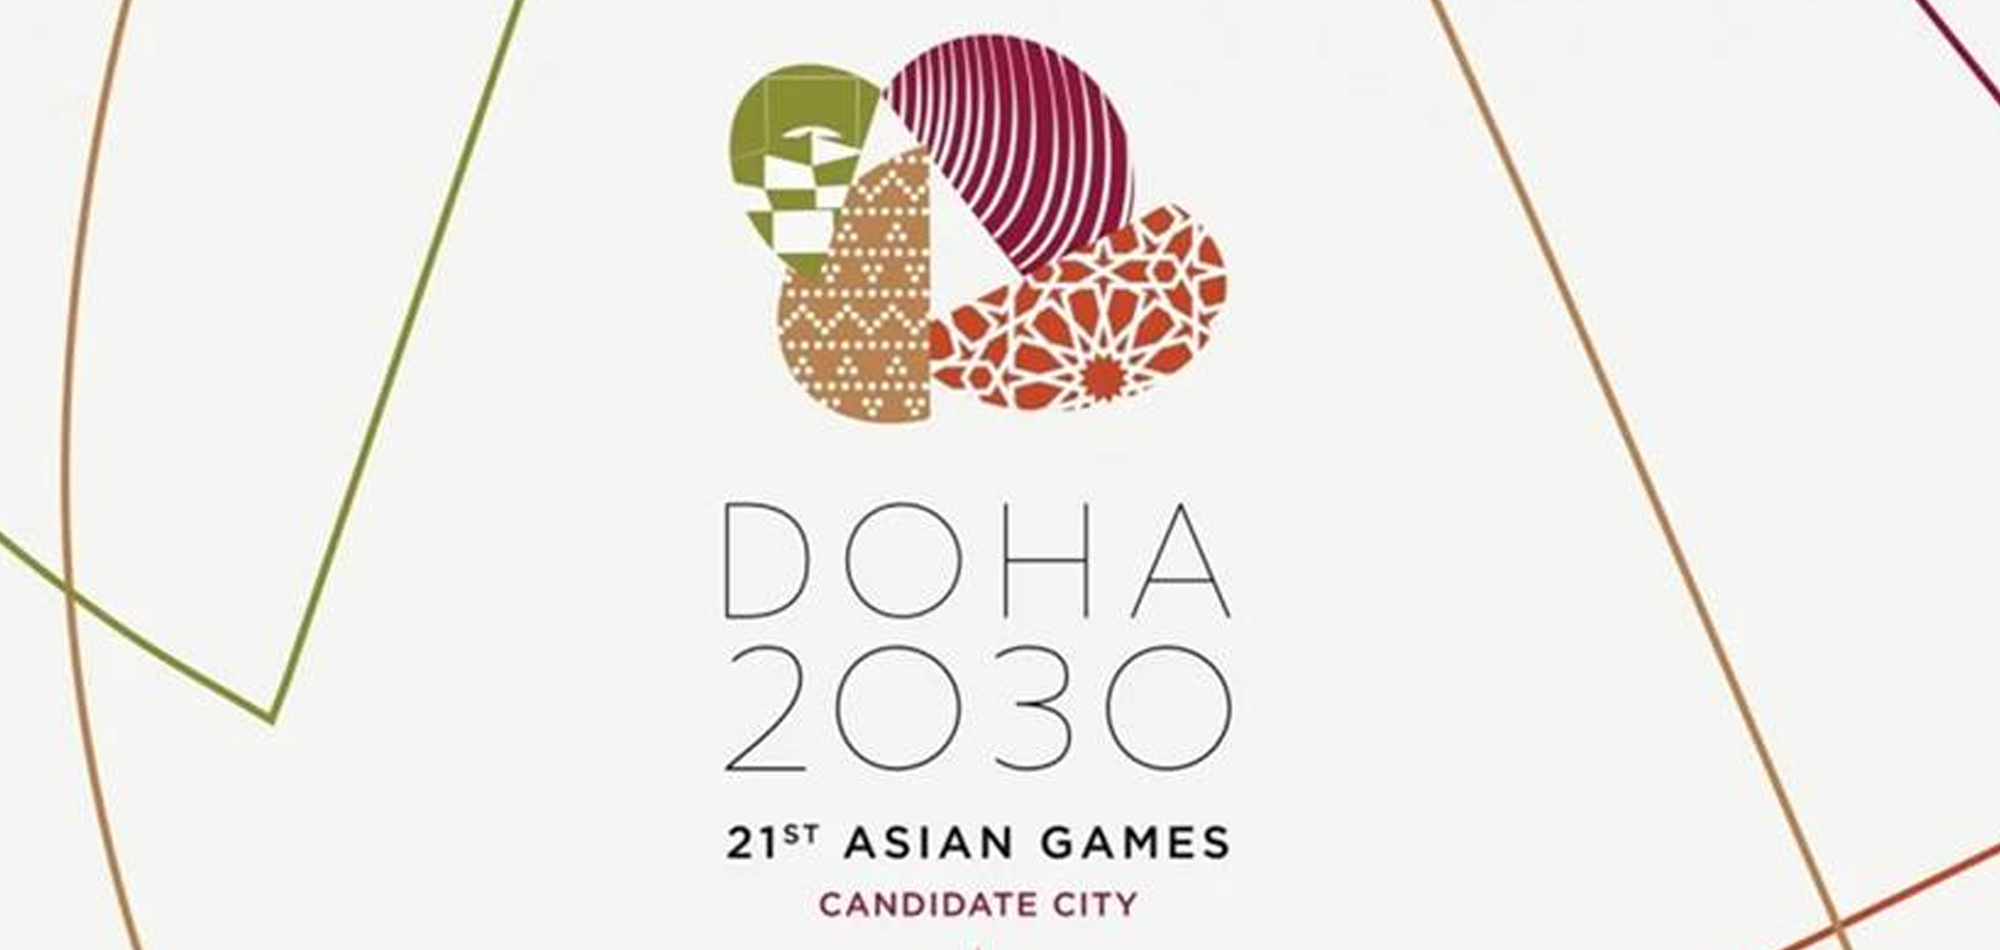 دورة الألعاب الآسيوية “الدوحة 2030” 